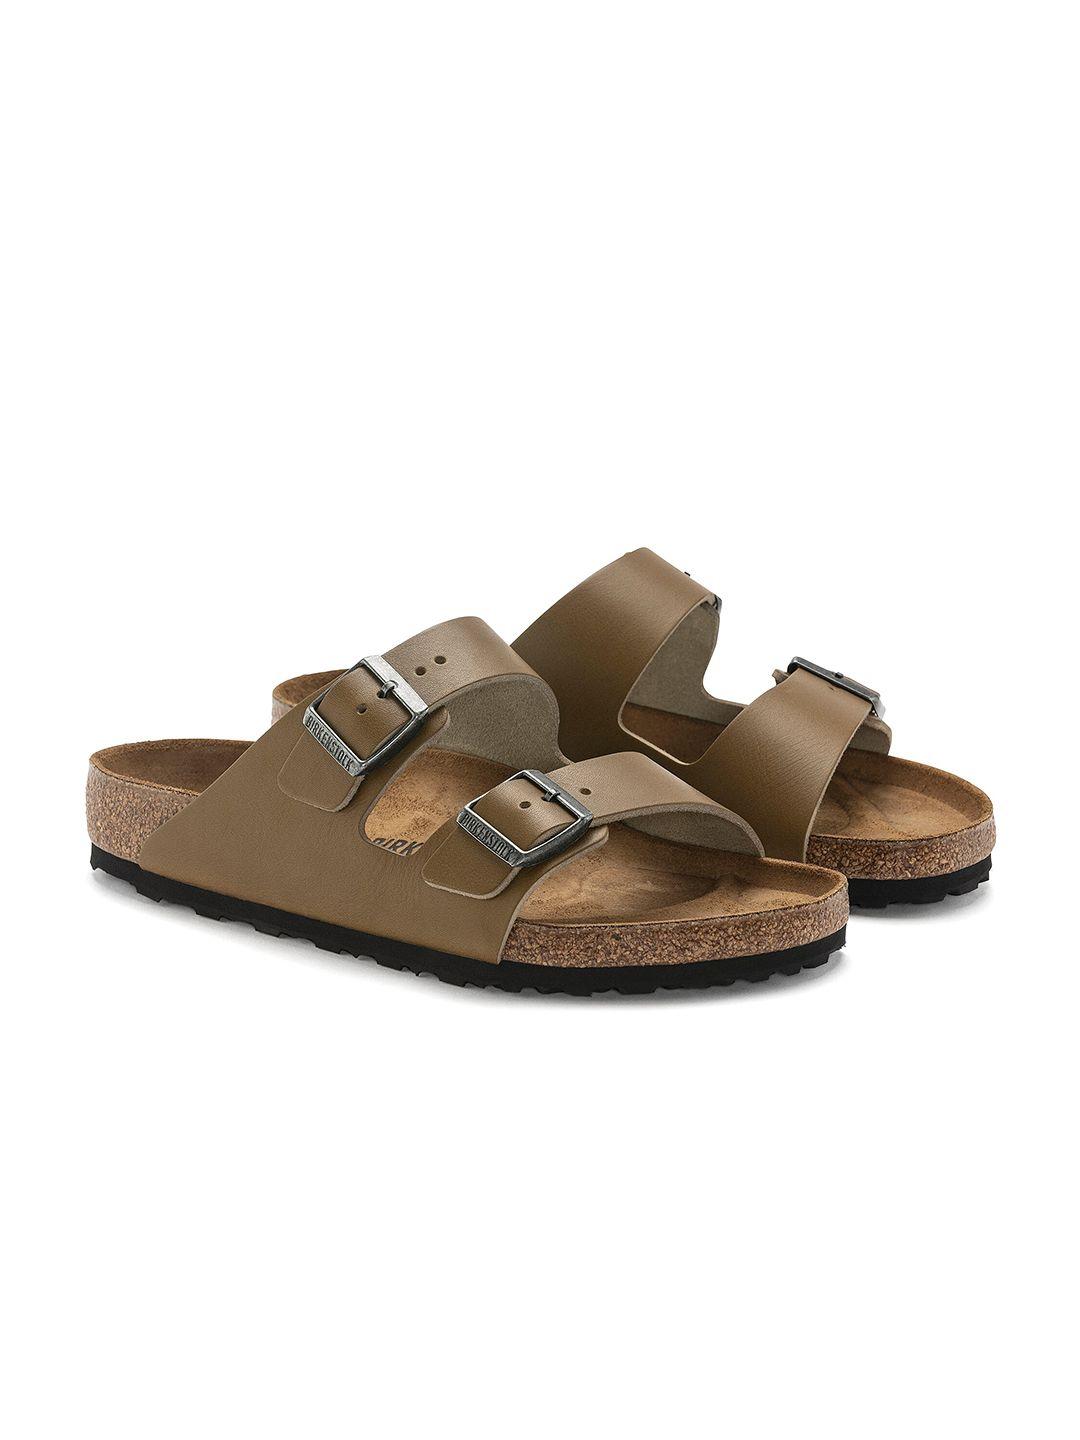 birkenstock men arizona grip regular width comfort sandals